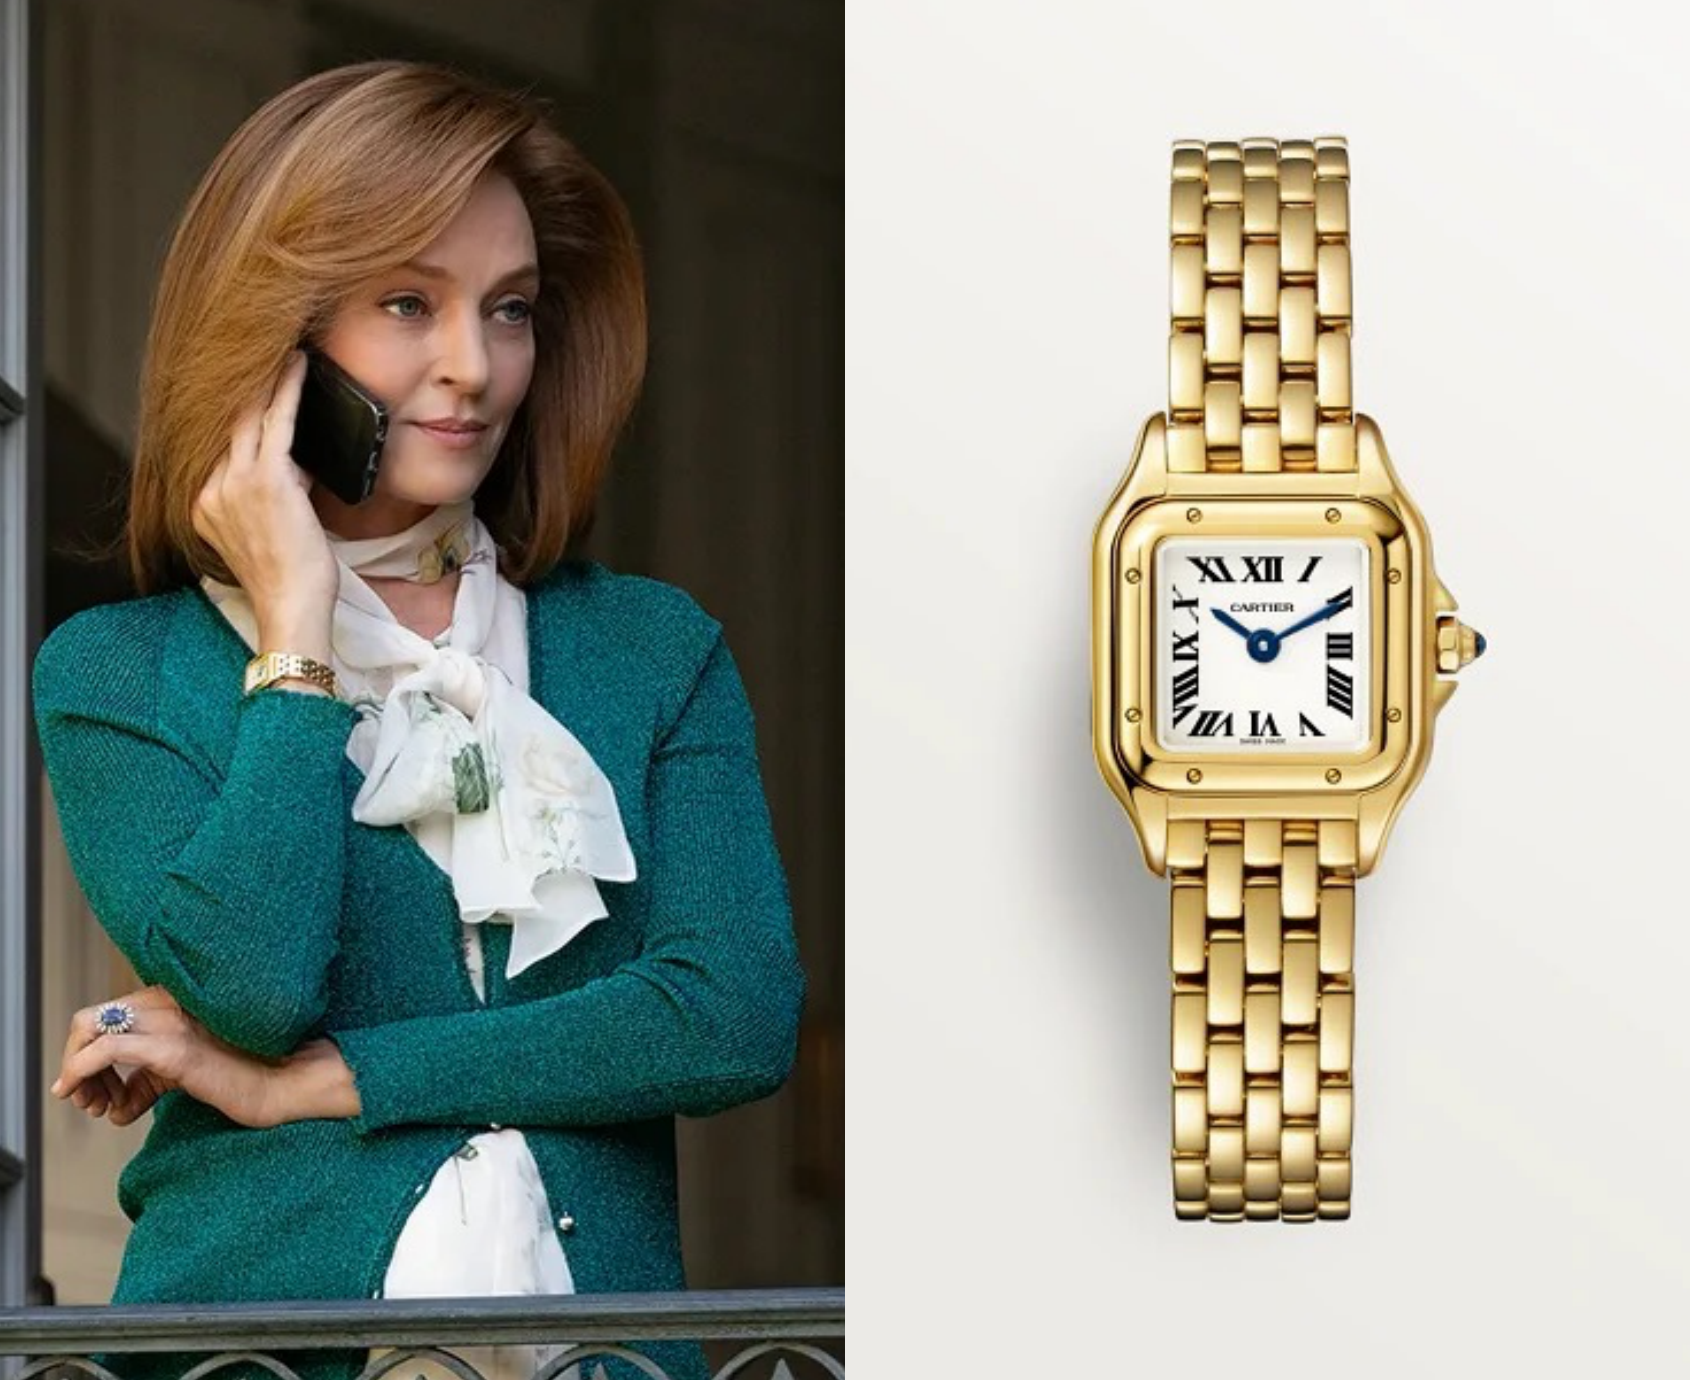 Which celebrities wear Cartier watches?